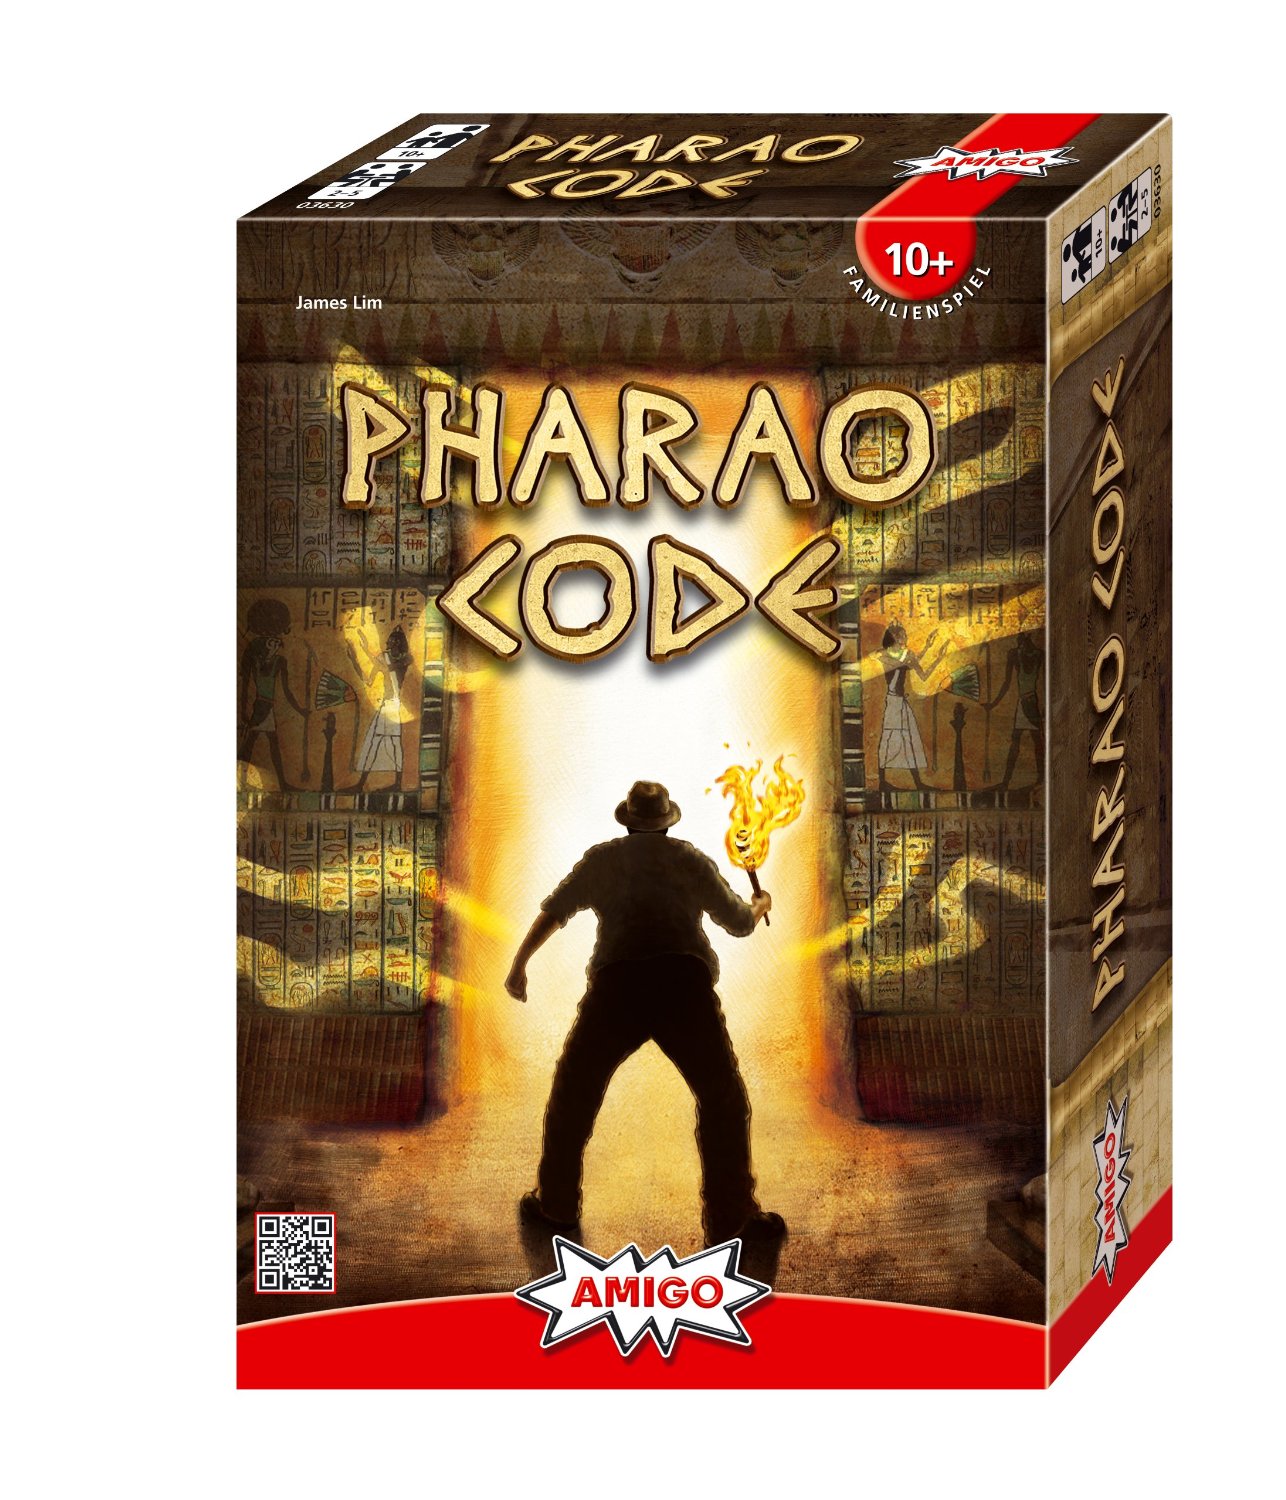 Pharao_Code_Amigo | The Black Gift Kulturmagazin